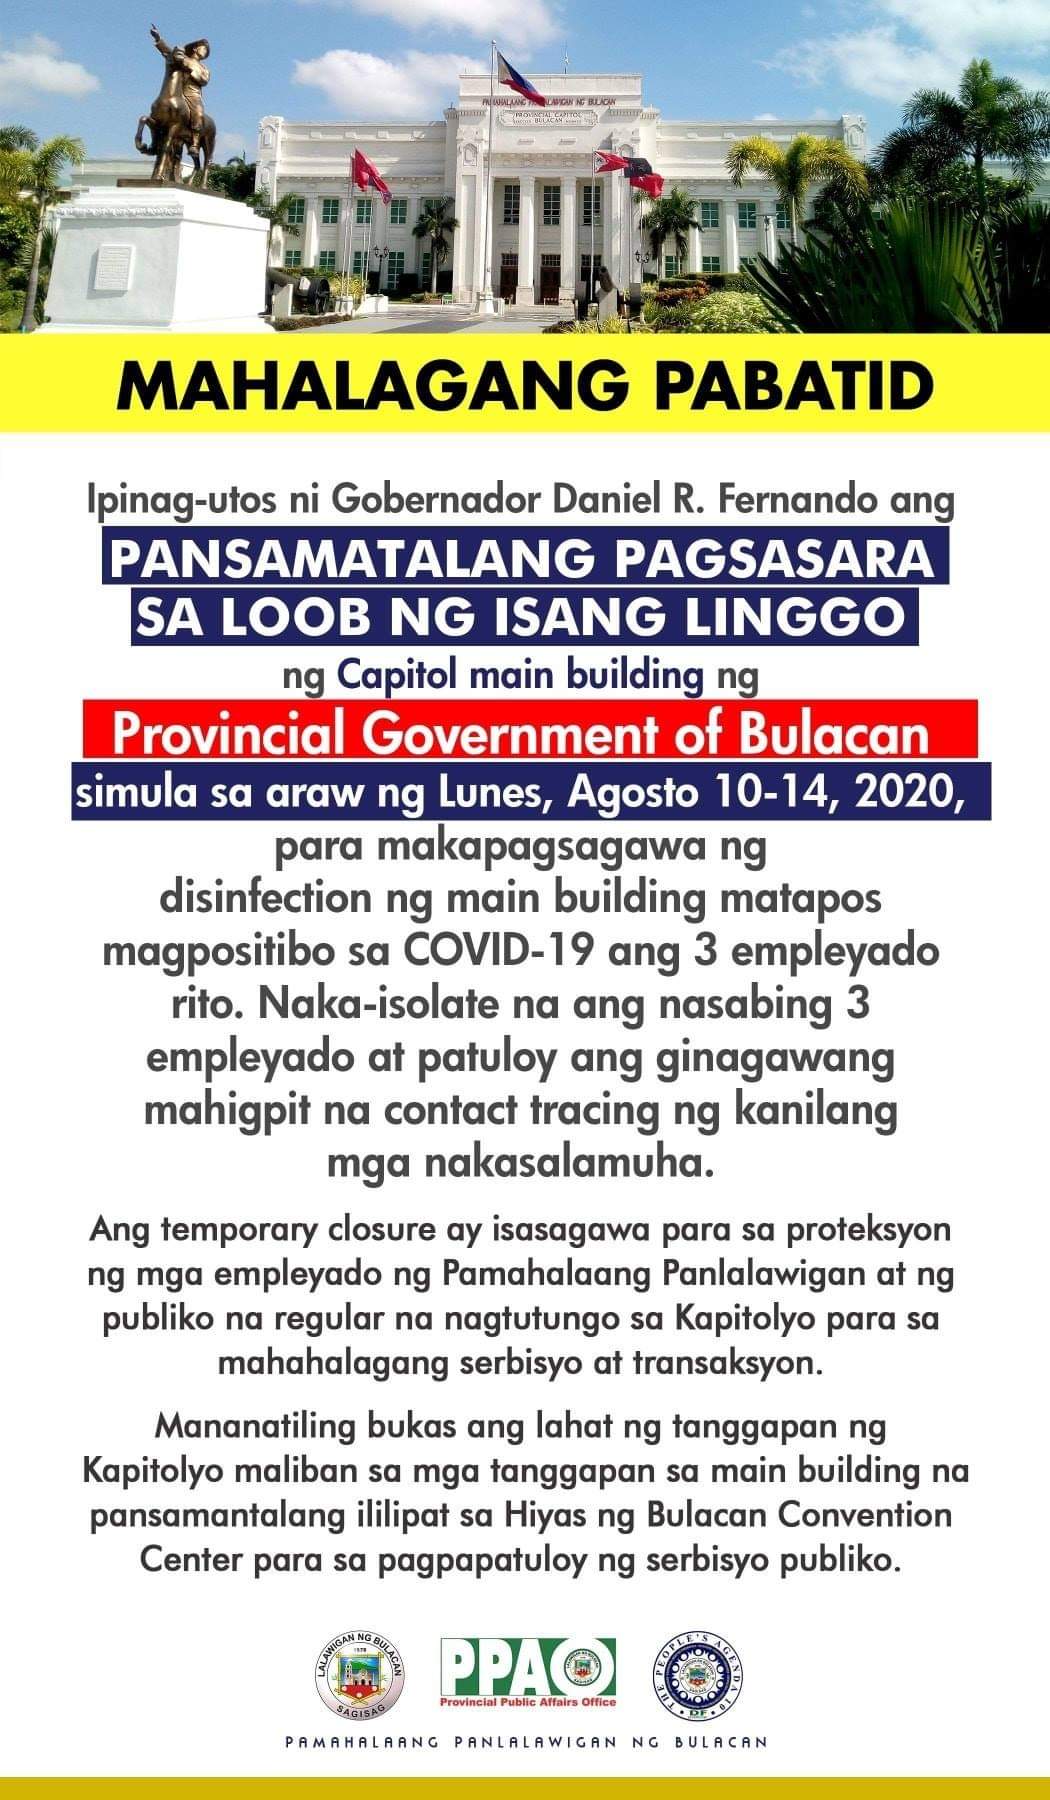 Provincial Capitol Bldg. ng Bulacan sasailalim sa lockdown; tatlong empleyado nagpositibo sa COVID-19